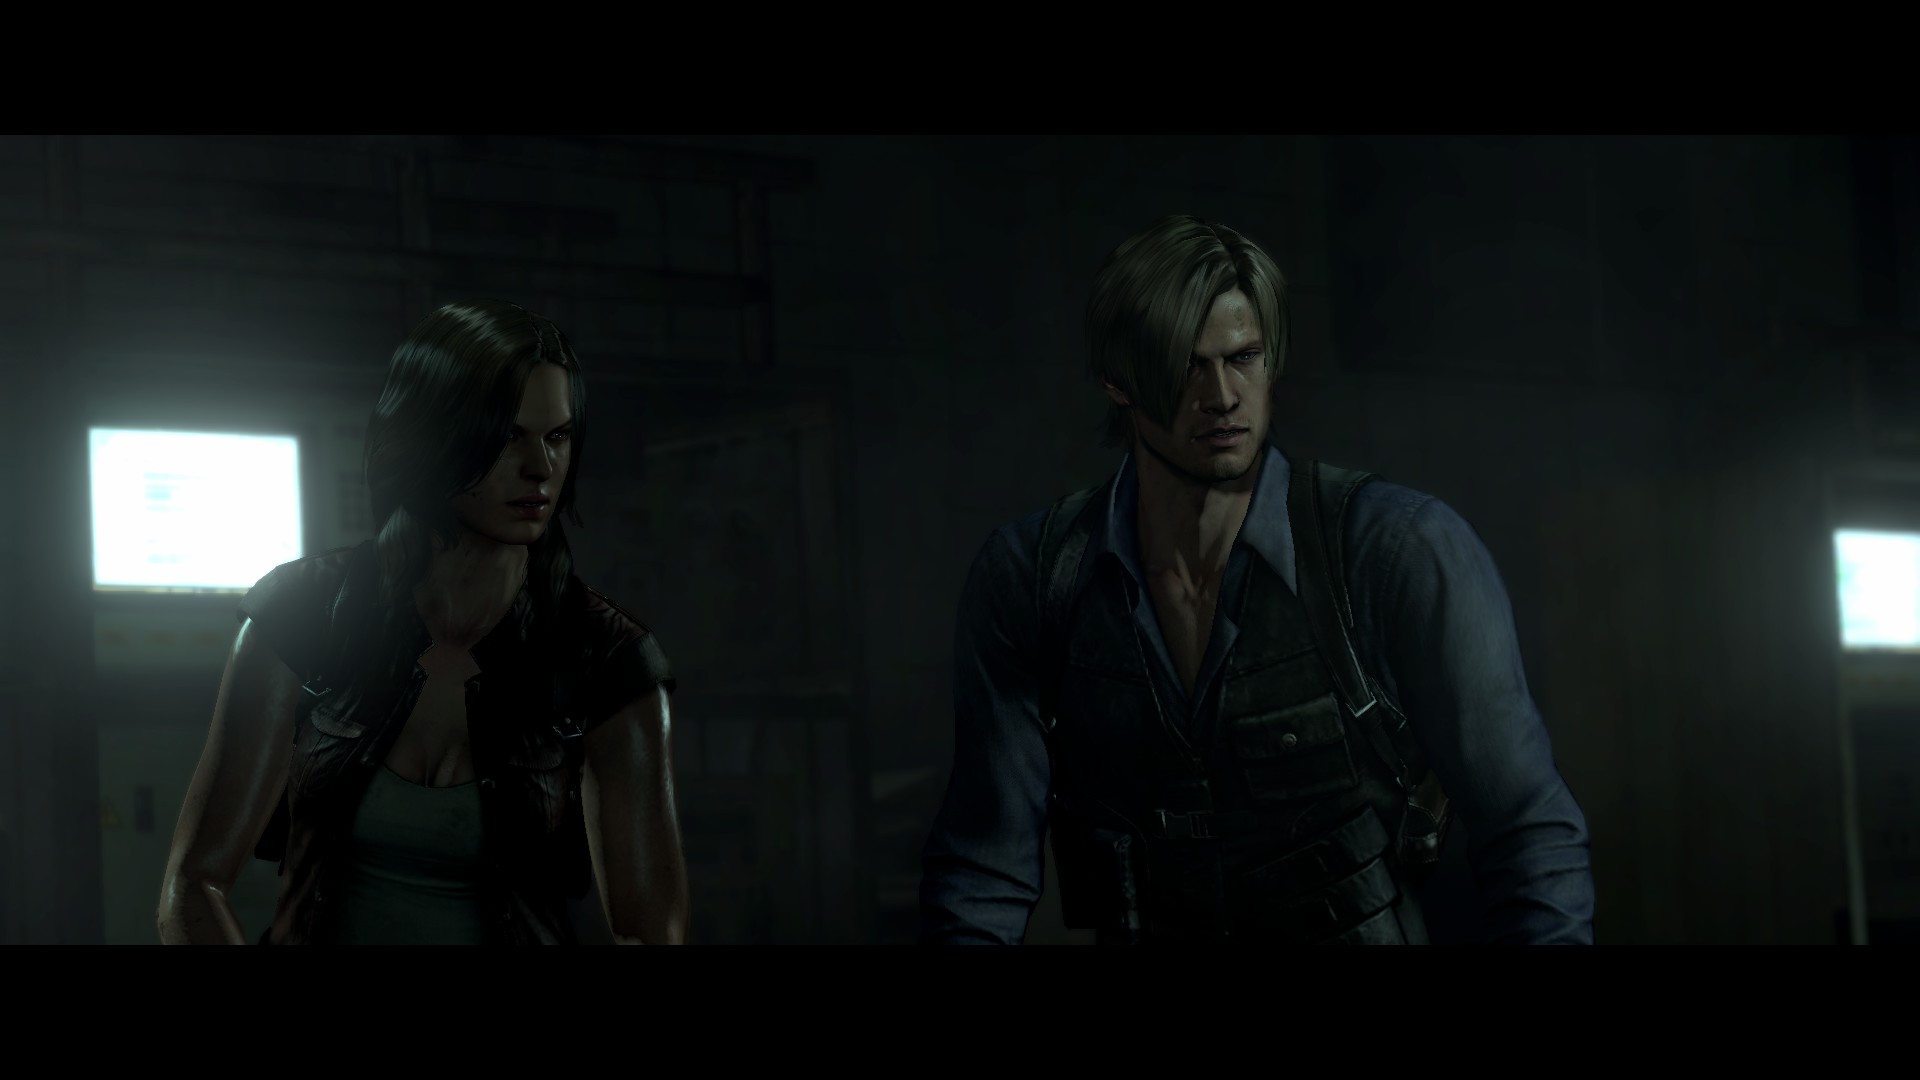 Baixar papel de parede para celular de Resident Evil, Videogame, Baiohazâdo 6 gratuito.